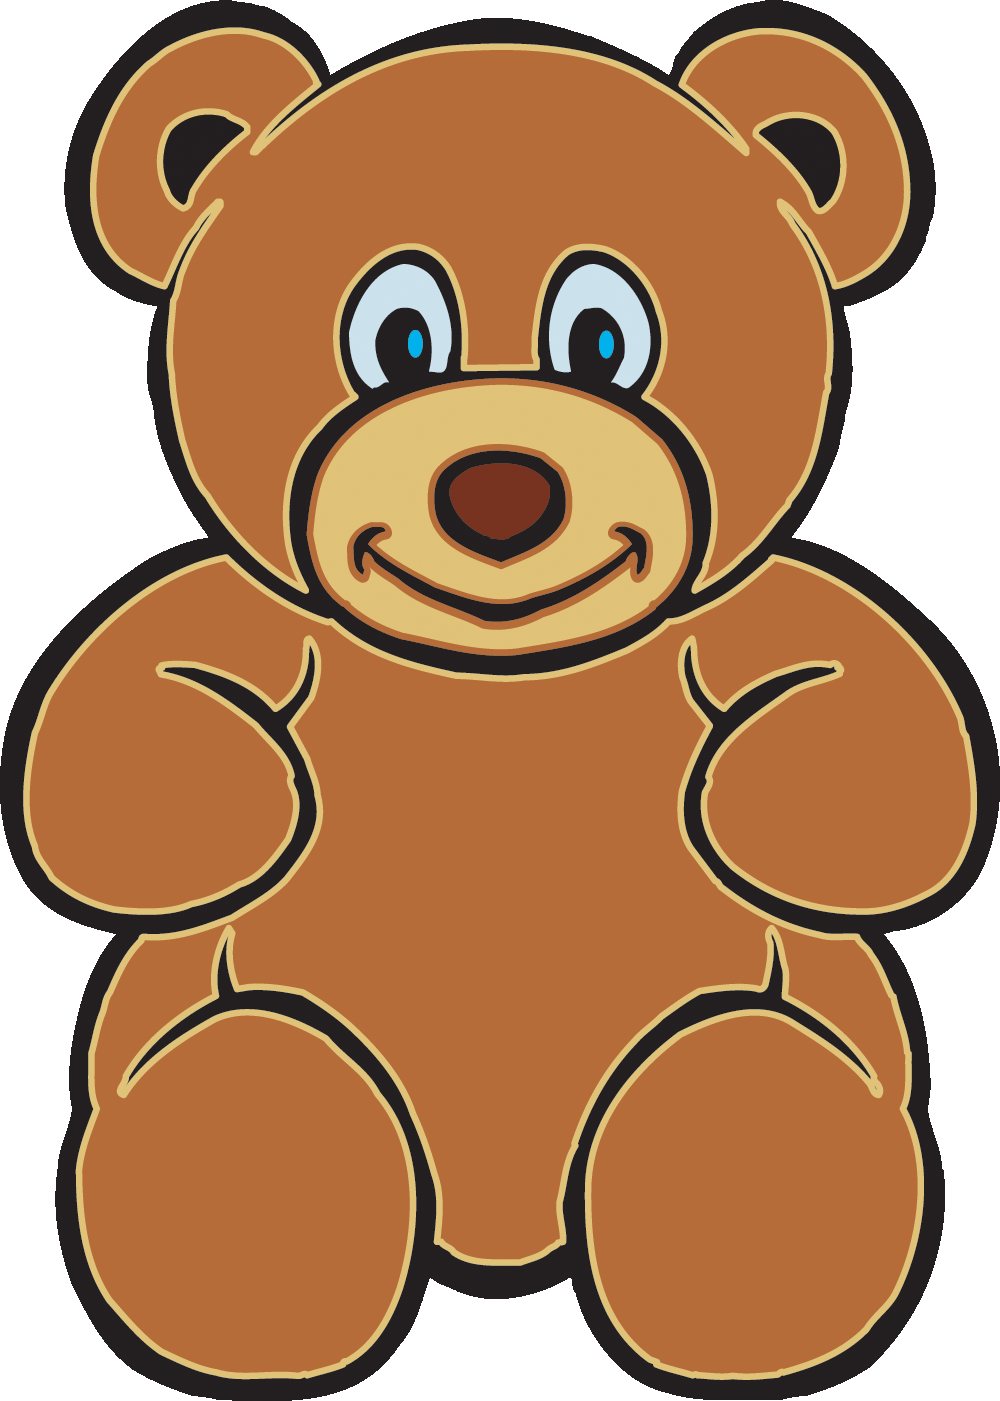 Cute bear cute brown bear clipart clipart kid 2